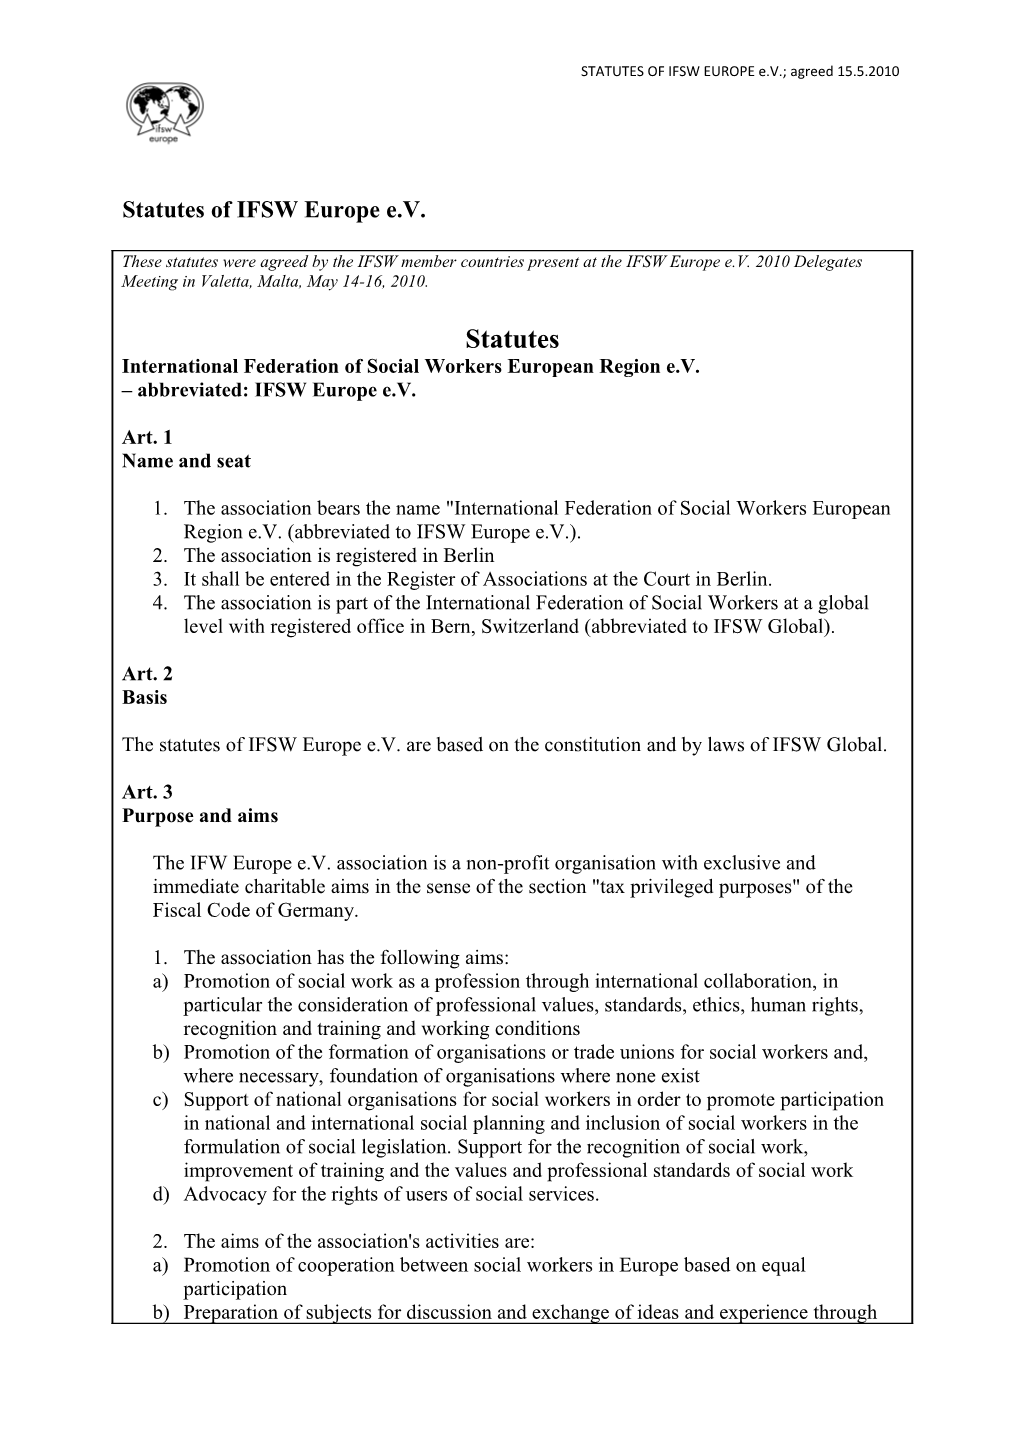 STATUTES of IFSW EUROPE E.V.; Agreed 15.5.2010